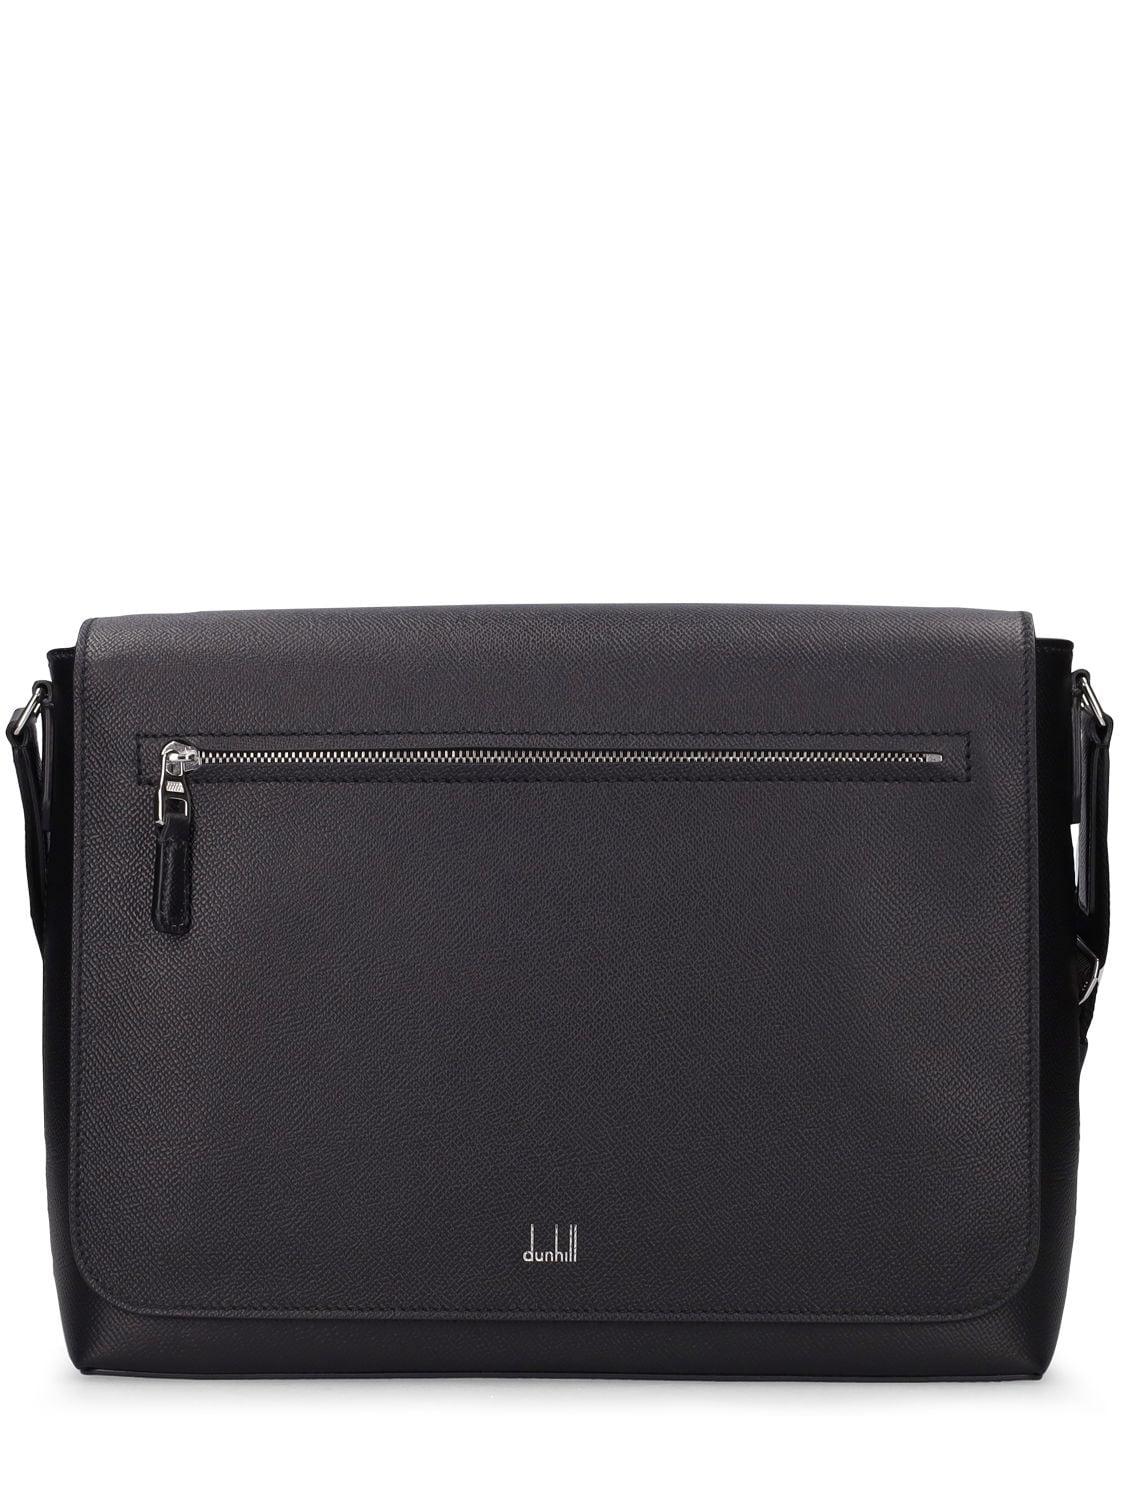 Dunhill Cadogan Leather Messenger Bag in Black for Men | Lyst